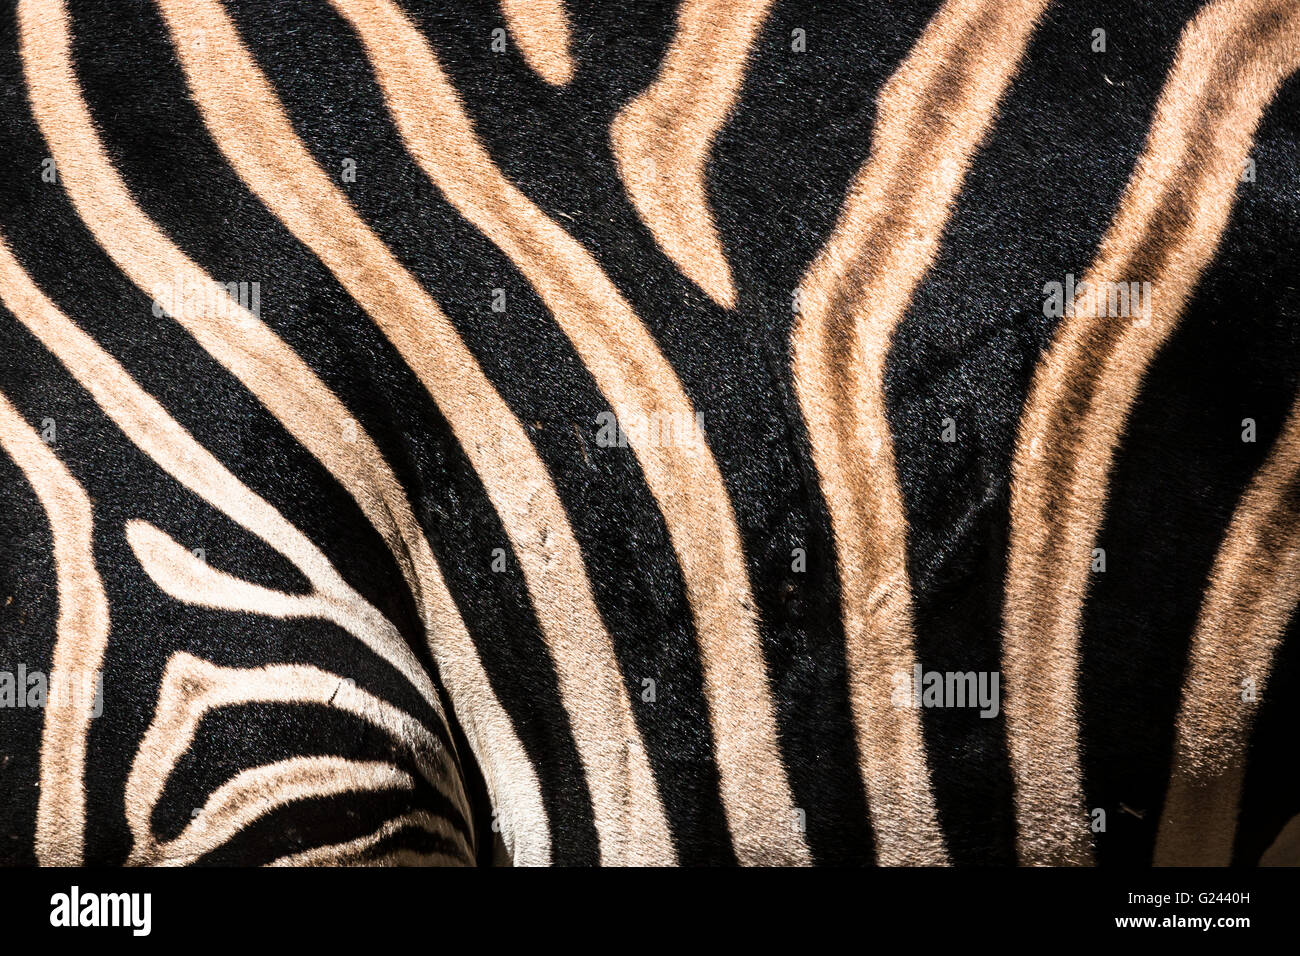 Dettaglio della Zebra Equus quagga Chapmani strisce. Foto Stock